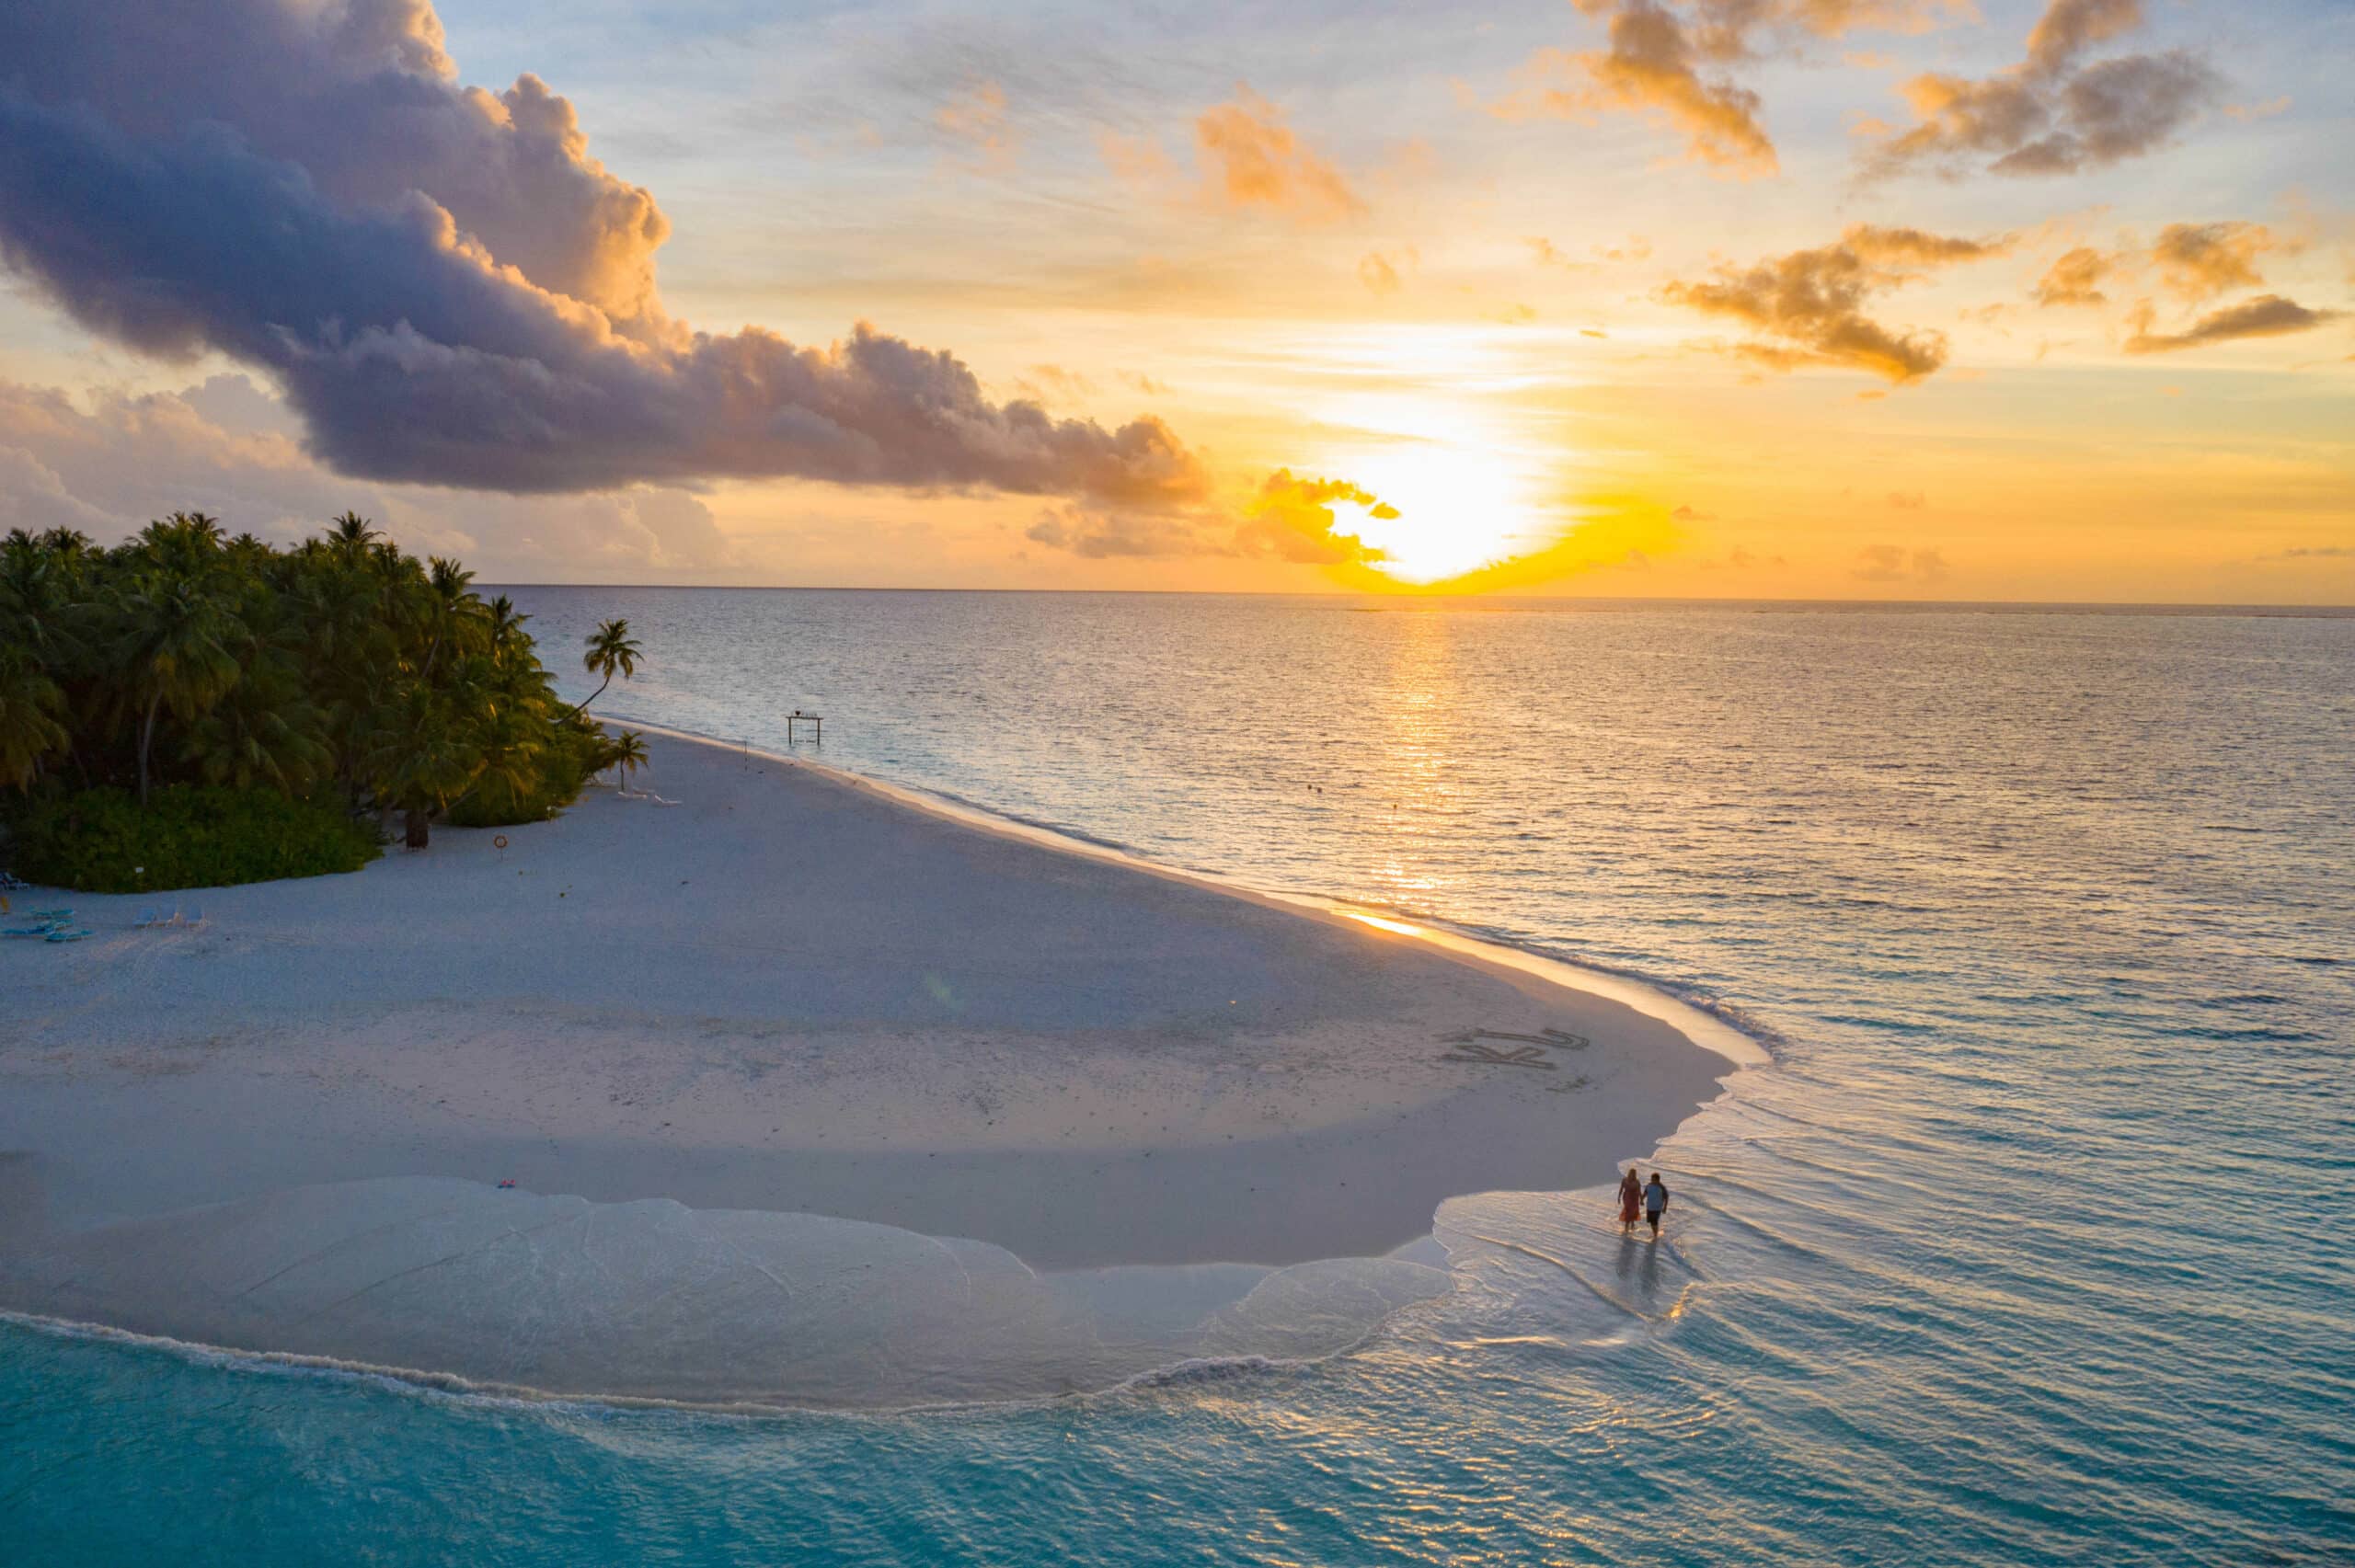 Tahiti'de sezon dışı: Adayı keşfetmek için Temmuz-Ağustos aylarından kaçınmalı mısınız?